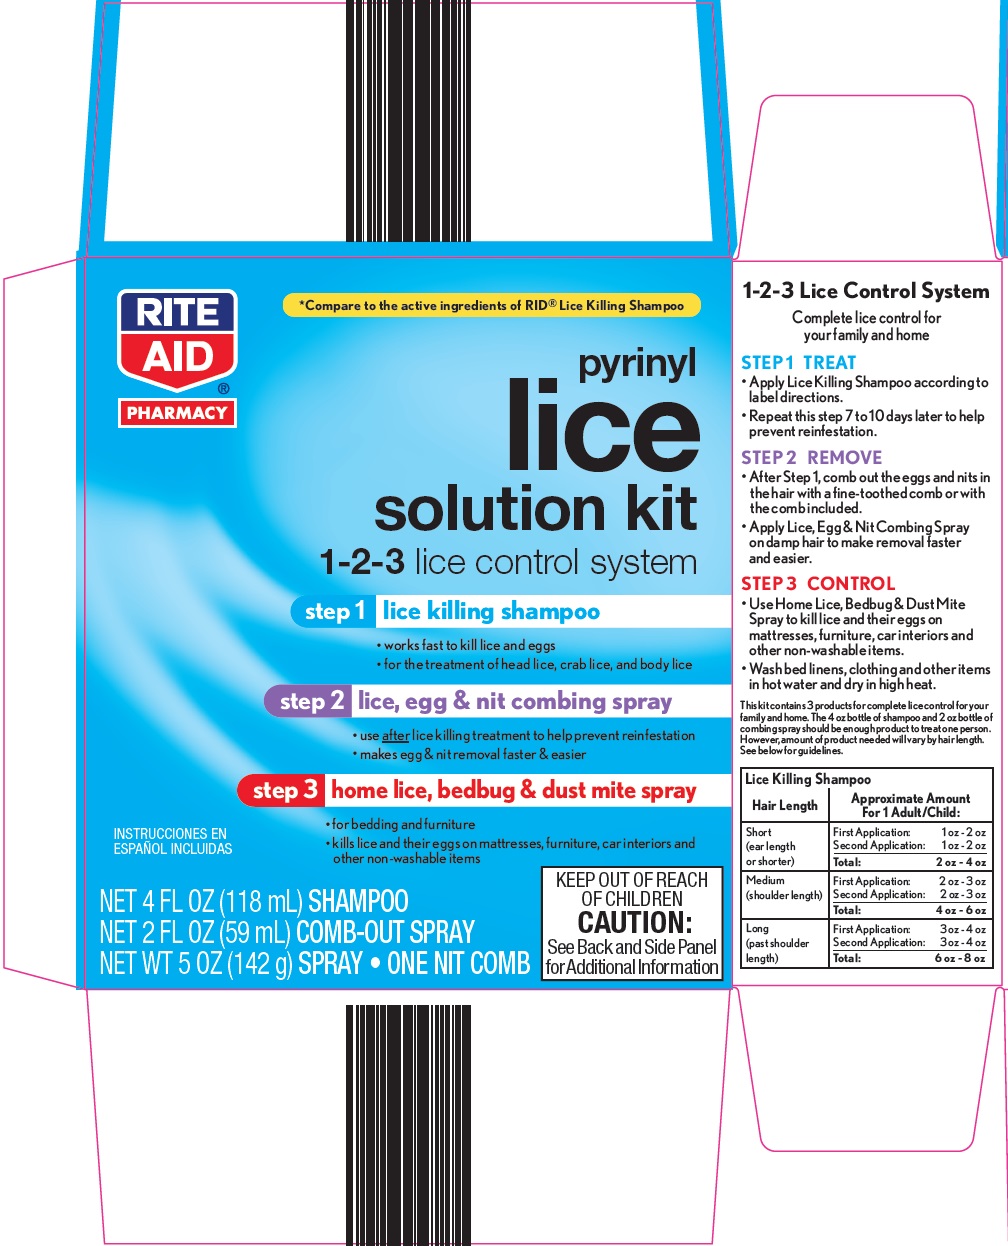 6y6-83-lice-solution-kit.jpg